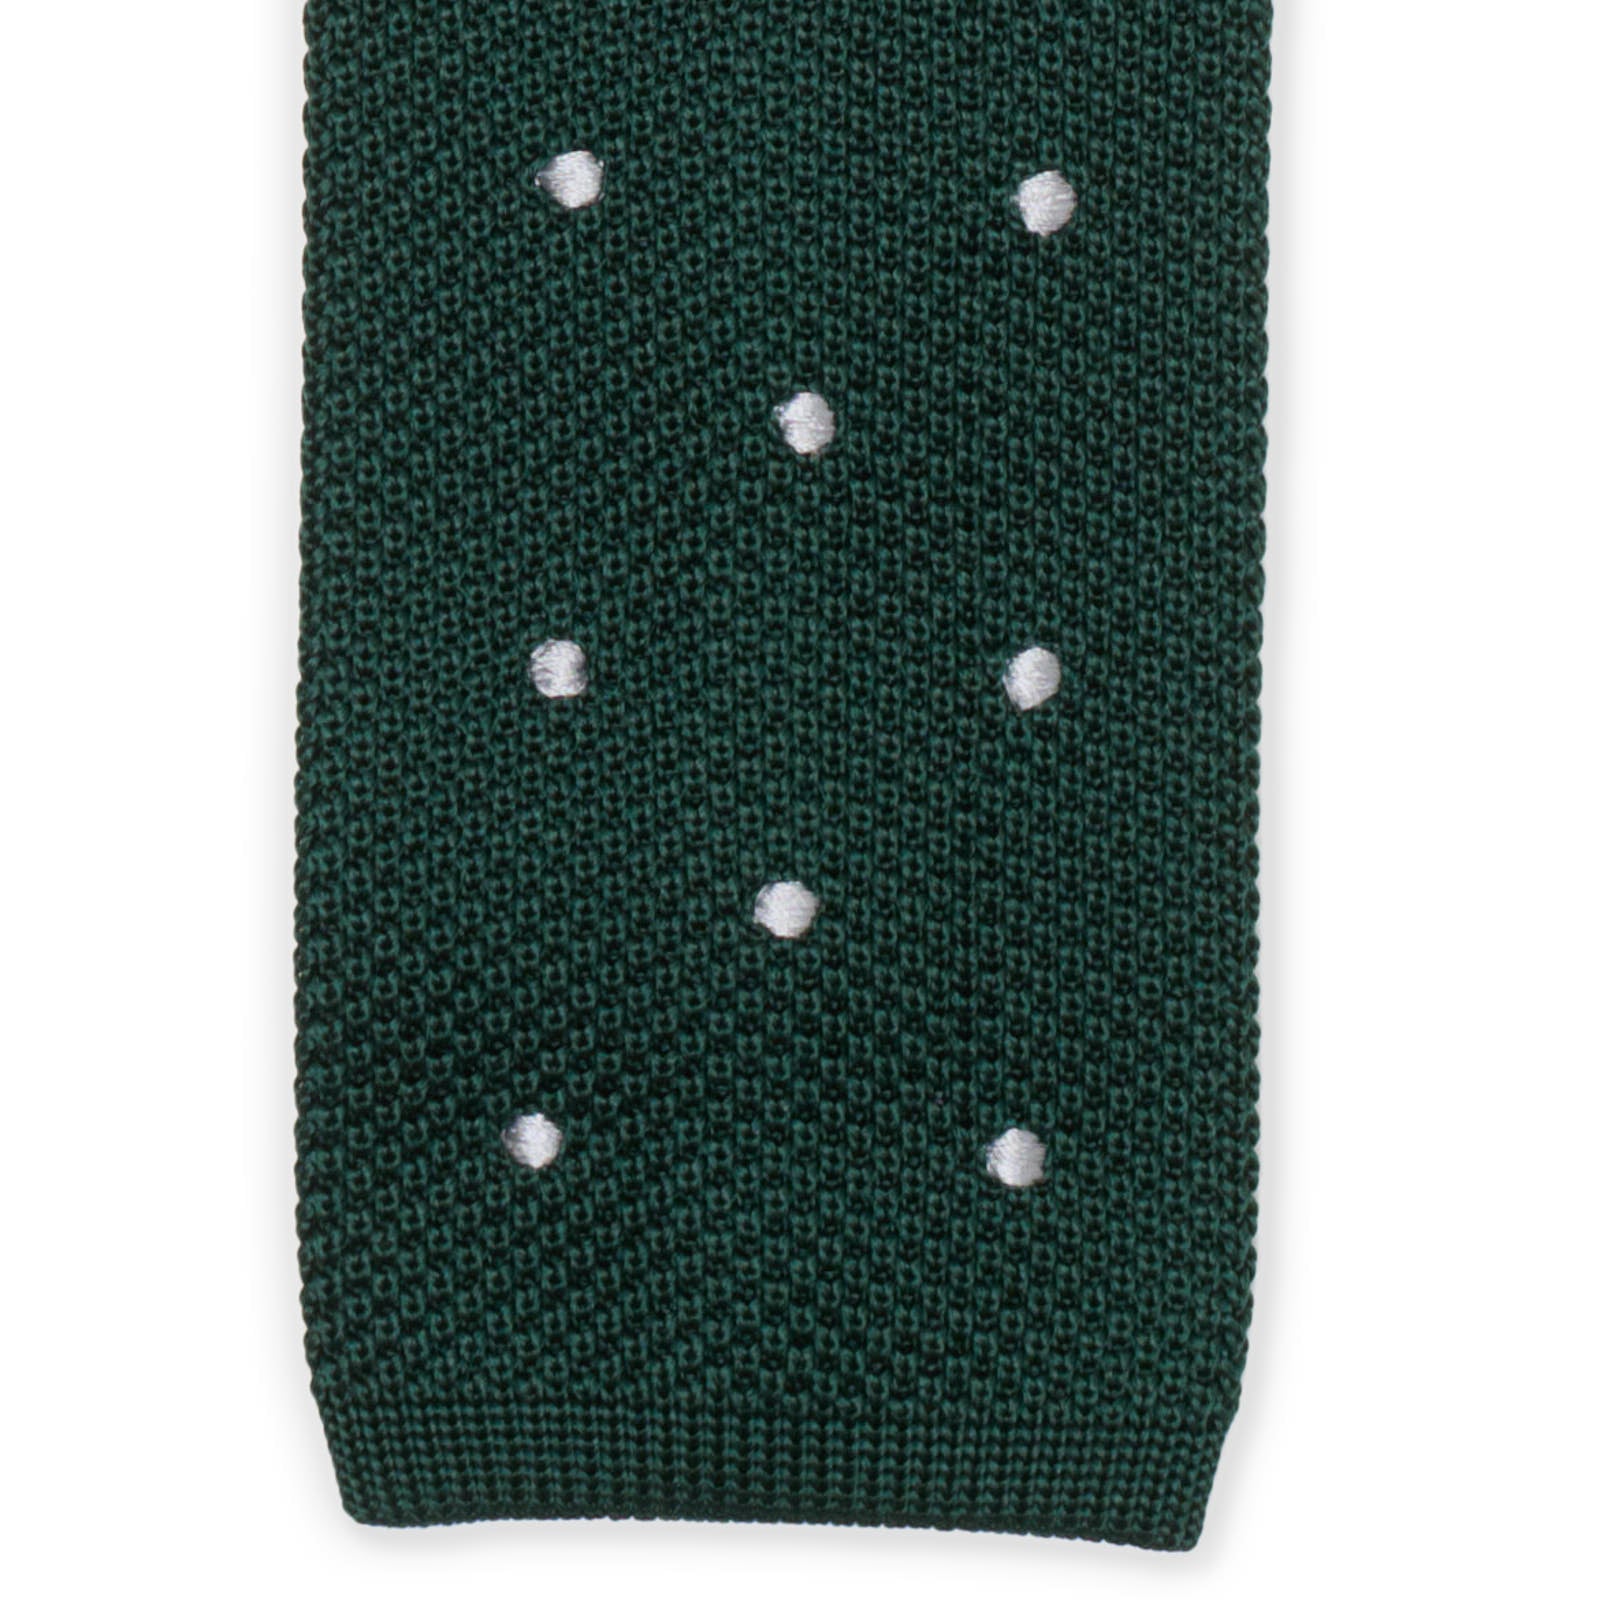 MATTABISCH FOR VANNUCCI Dark Green Dotted Silk Knit Tie NEW